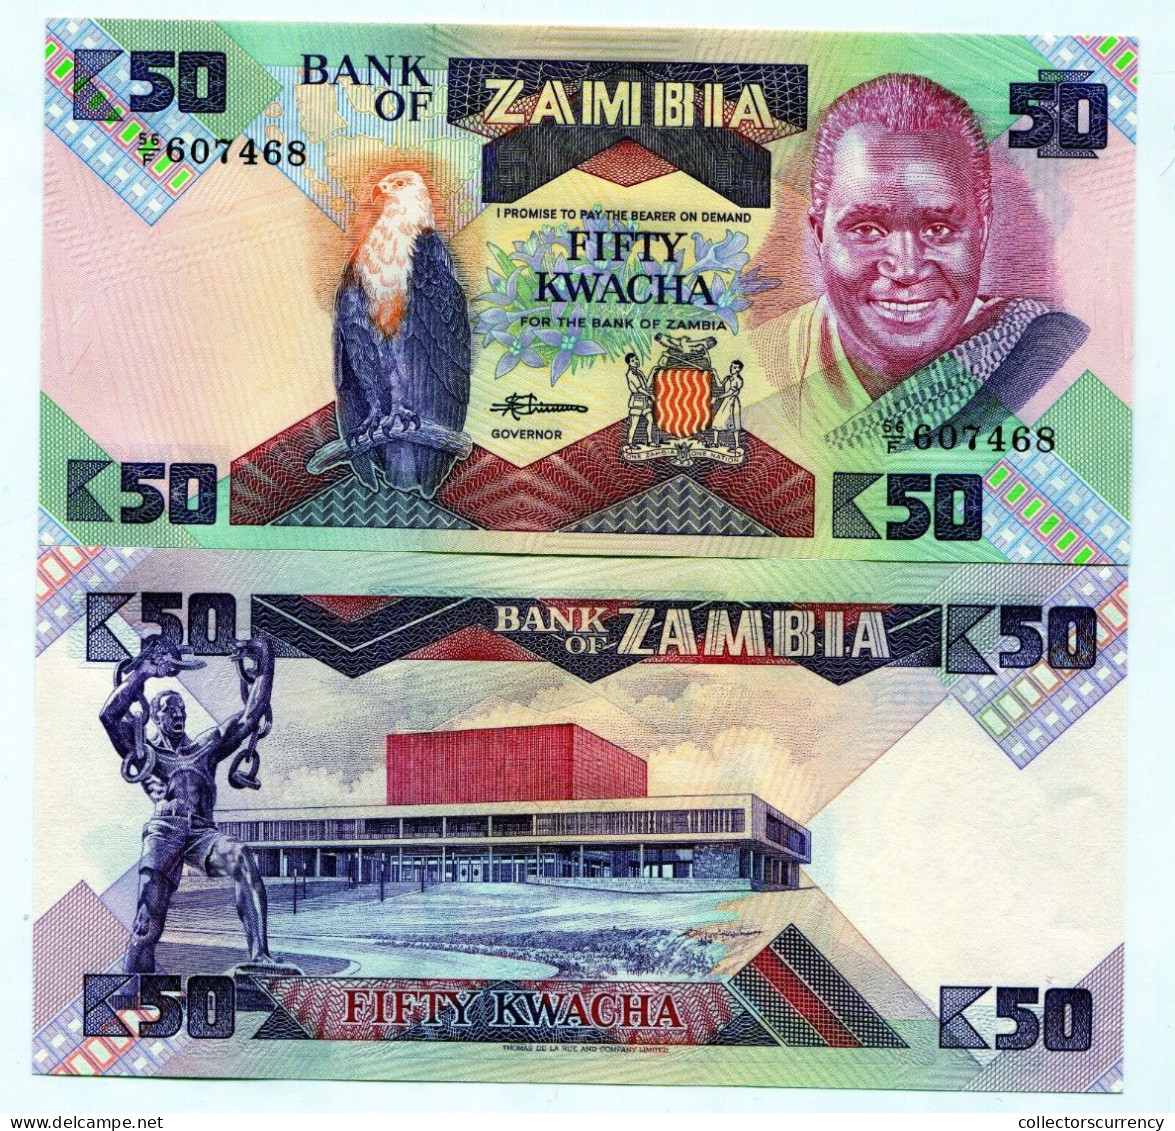 Zambia Pick 28 50 Kwacha UNC Banknote Paper Money 1986 X 10 Note Lot - Zambia